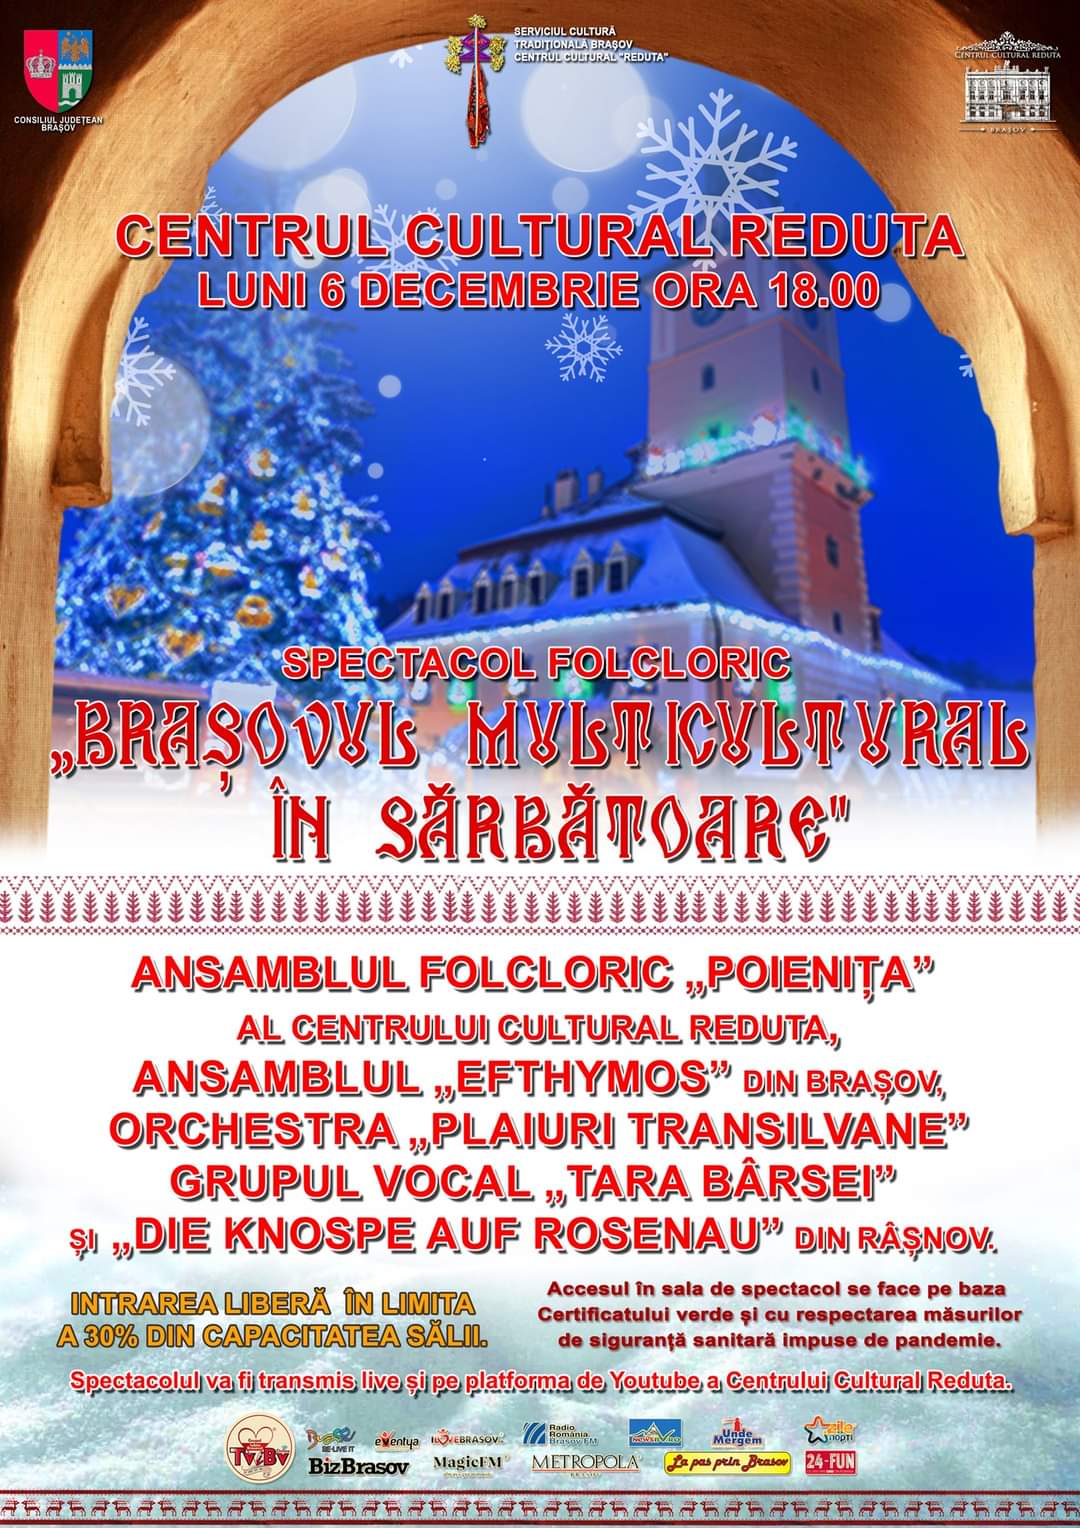 Centrul Cultural Reduta va organiza Spectacolul folcloric ,, Brașovul multicultural în sărbătoare'' în data de 6 decembrie, de la ora 18.00.